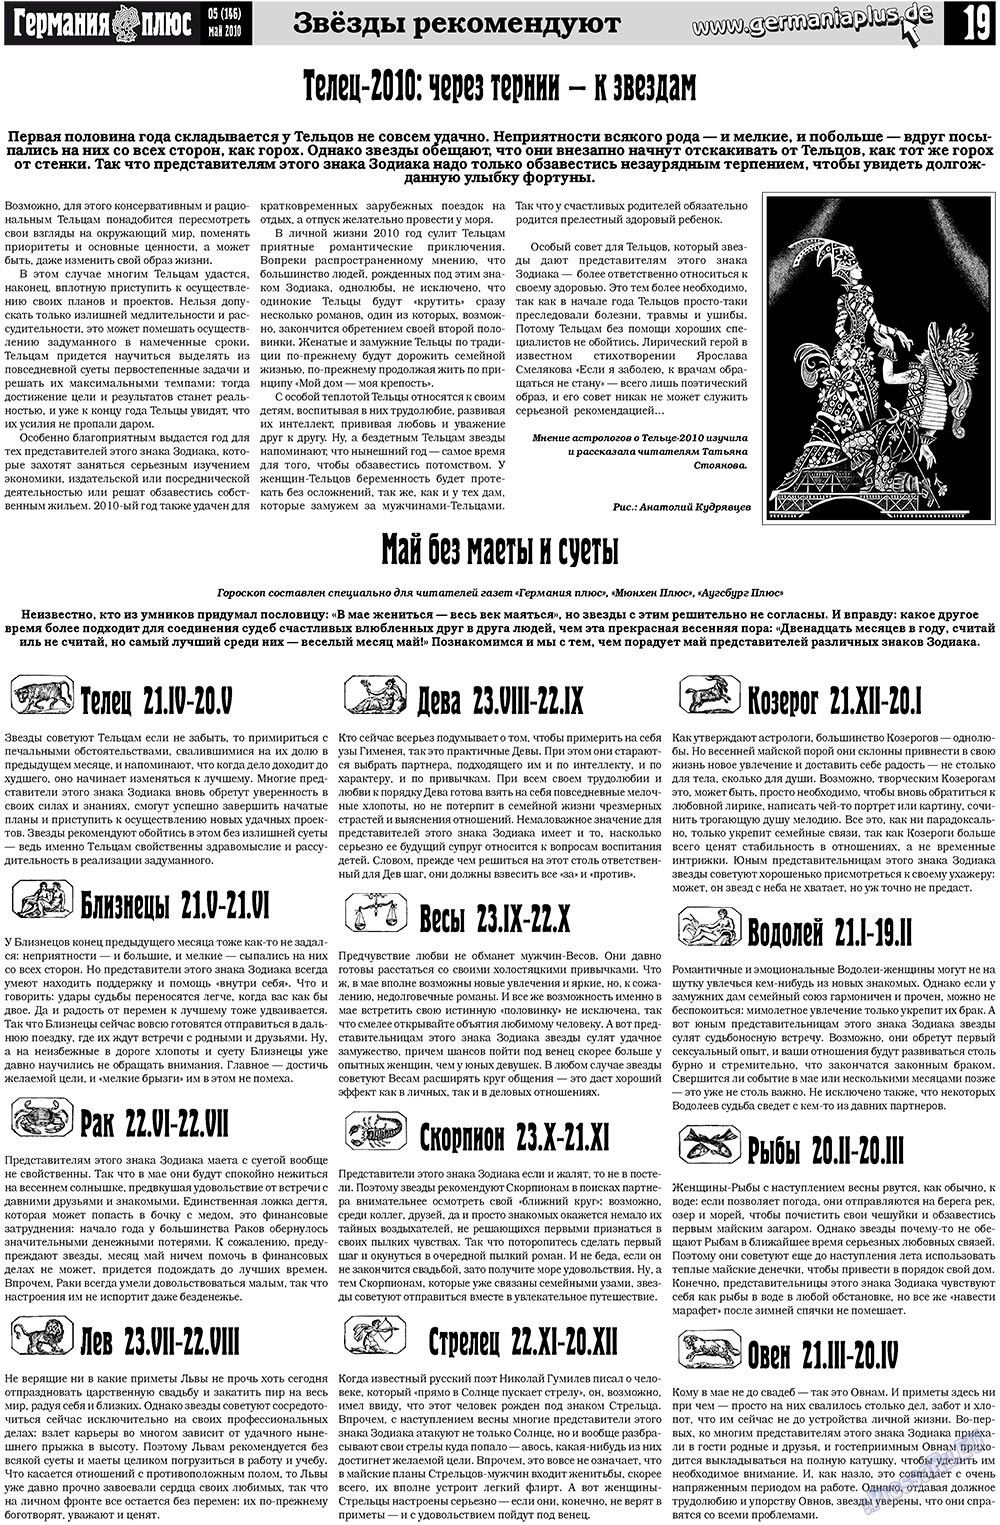 Германия плюс (газета). 2010 год, номер 5, стр. 19